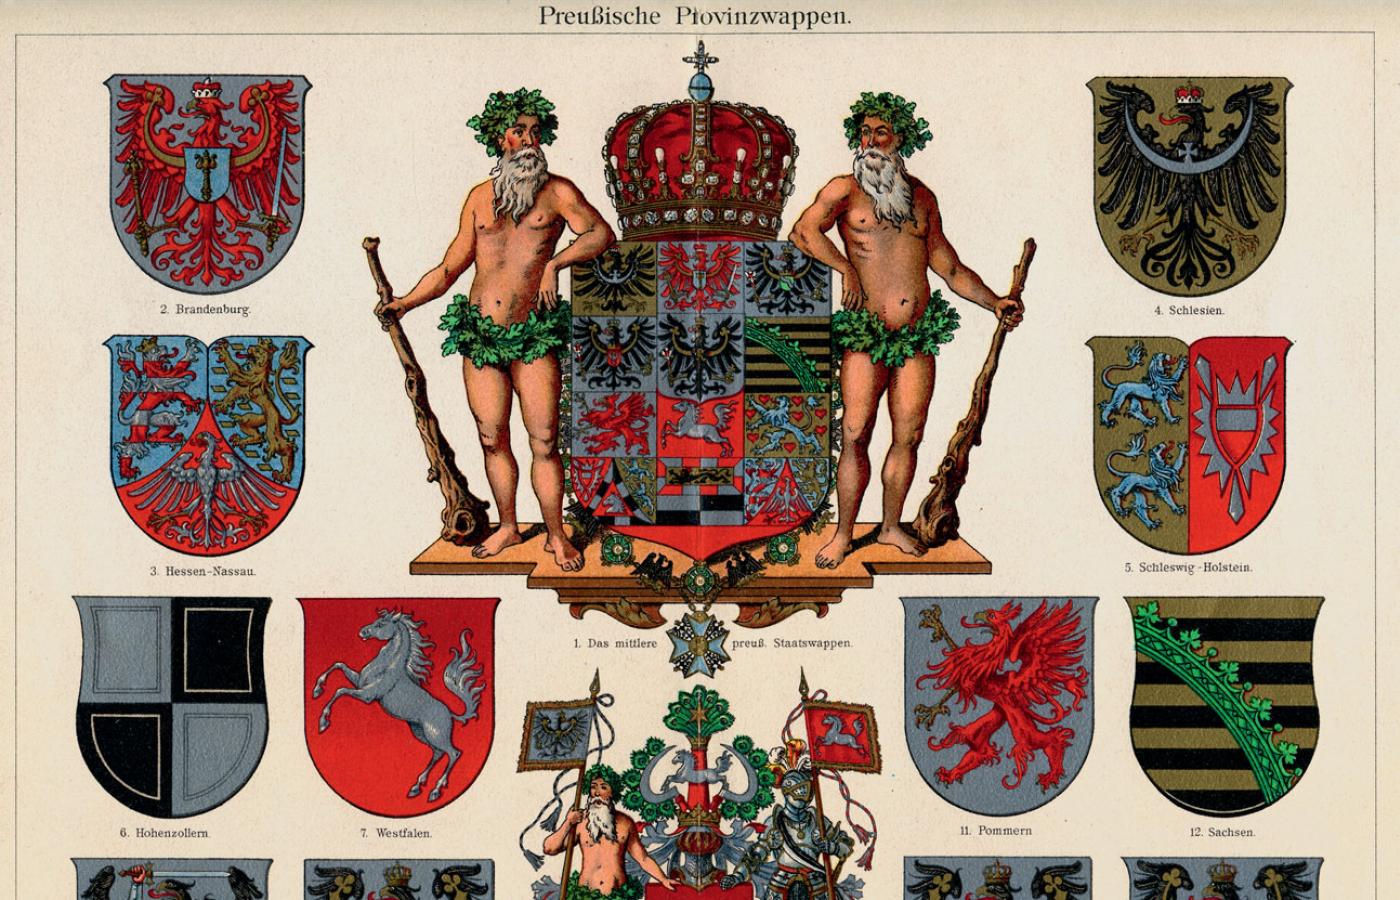 Herby pruskich prowincji (Śląsk w prawym górnym rogu); litografia z XIX w.